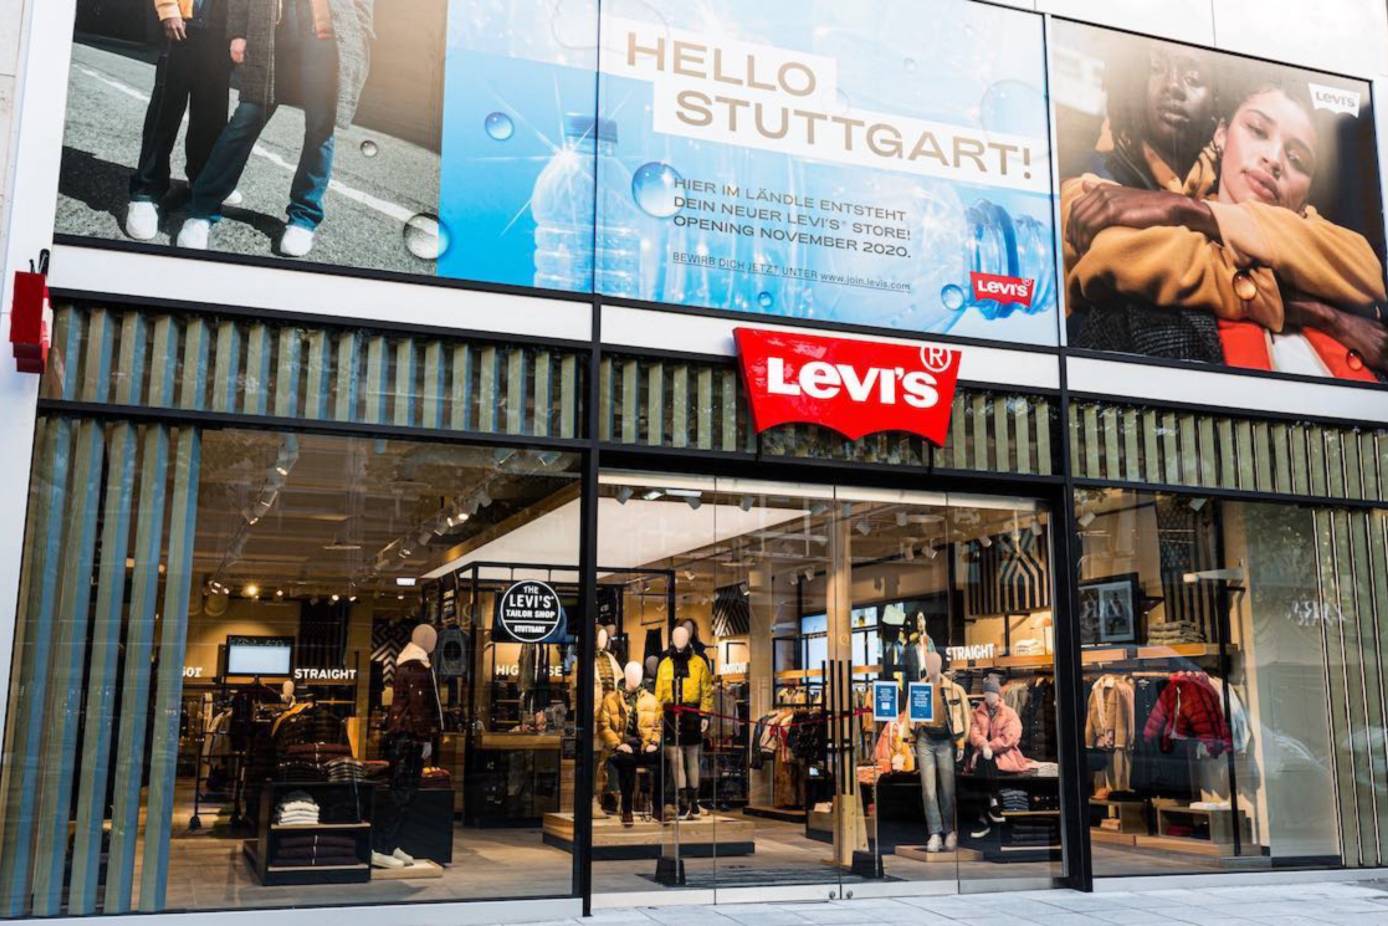 Levi's eröffnet Store in Stuttgarter